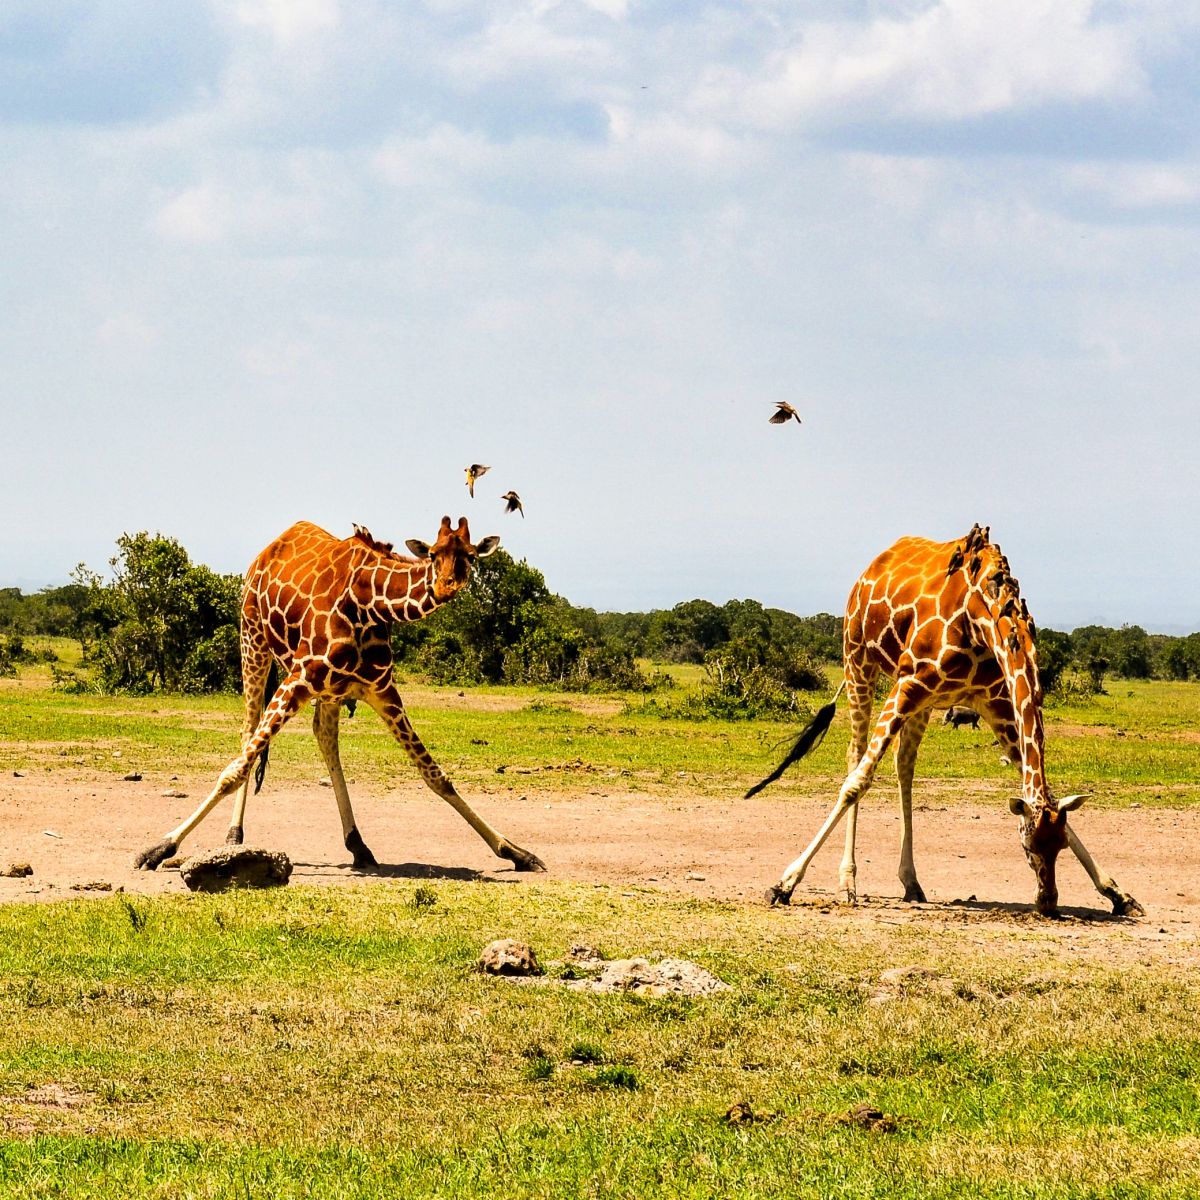 Two giraffes bending down in Kenya